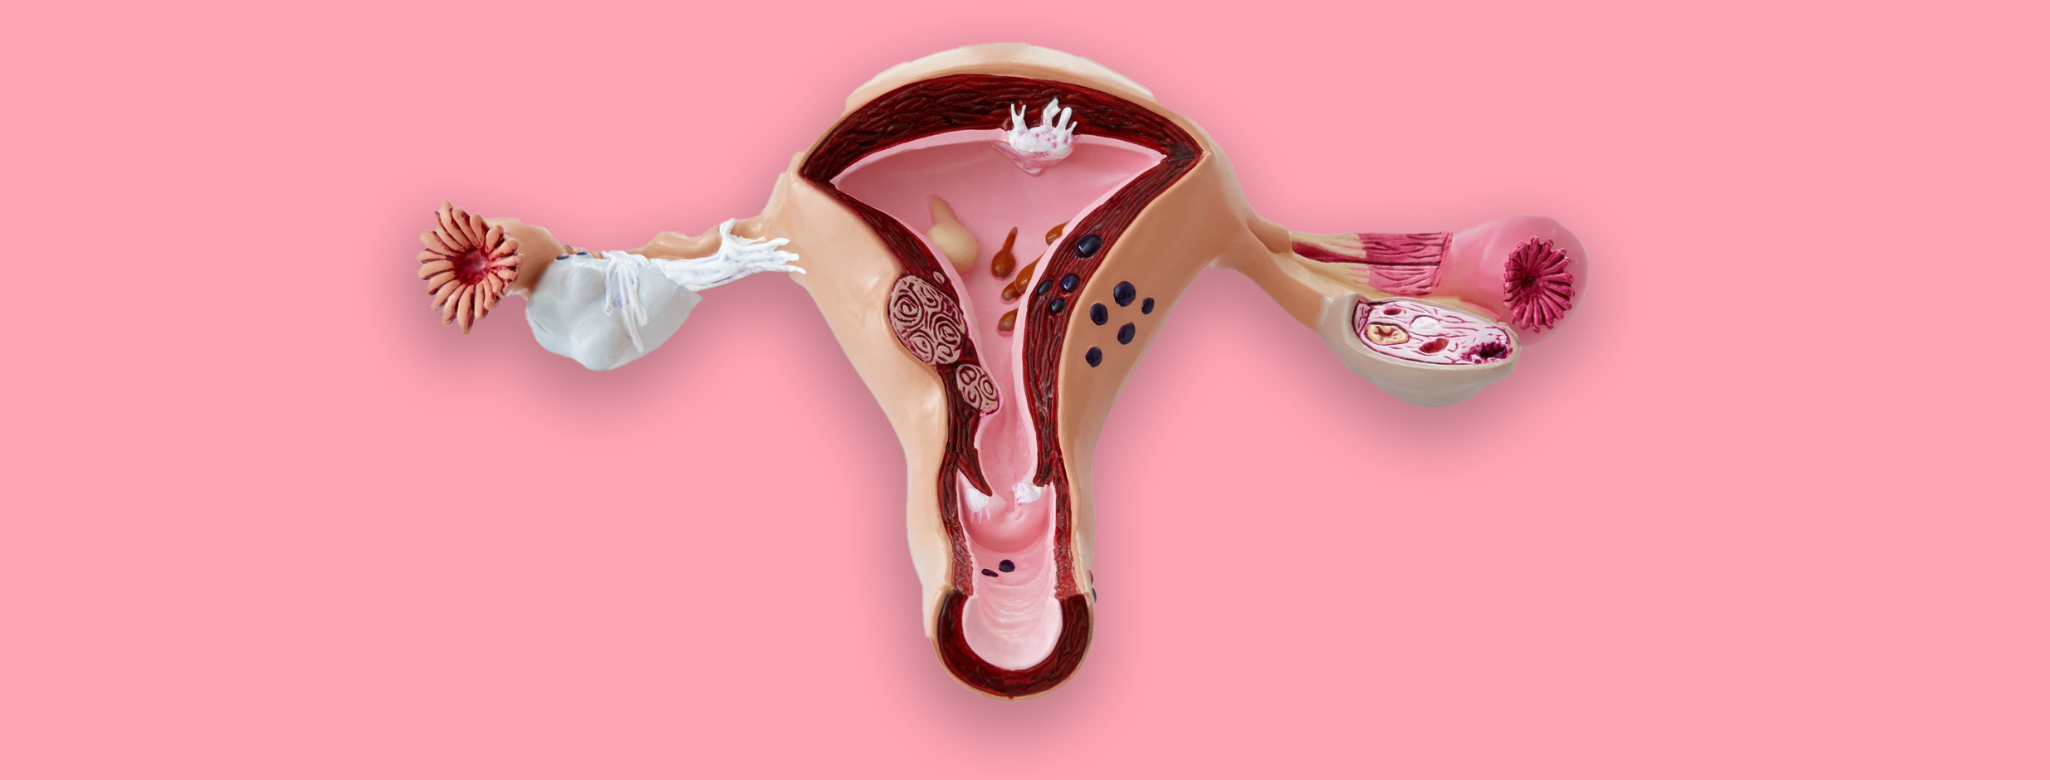 Sintomas da síndrome pré-menstrual